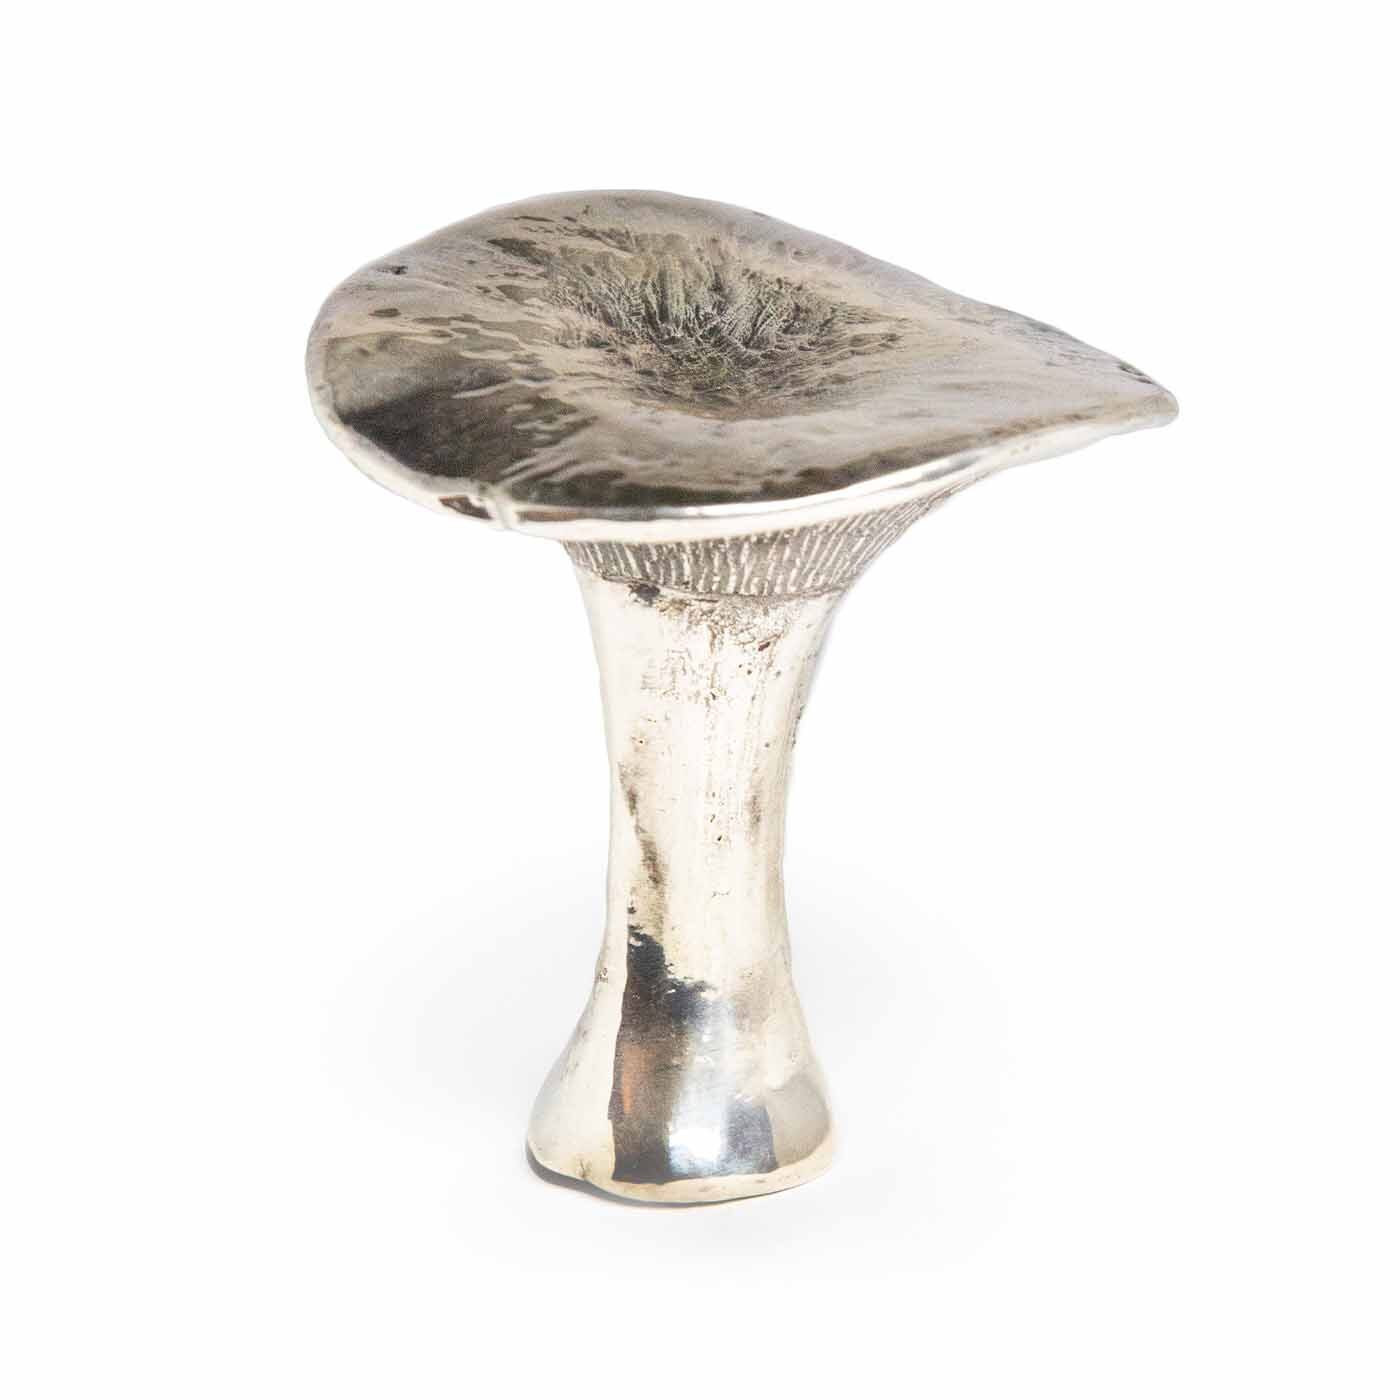 Silvered King Trumpet Mushroom